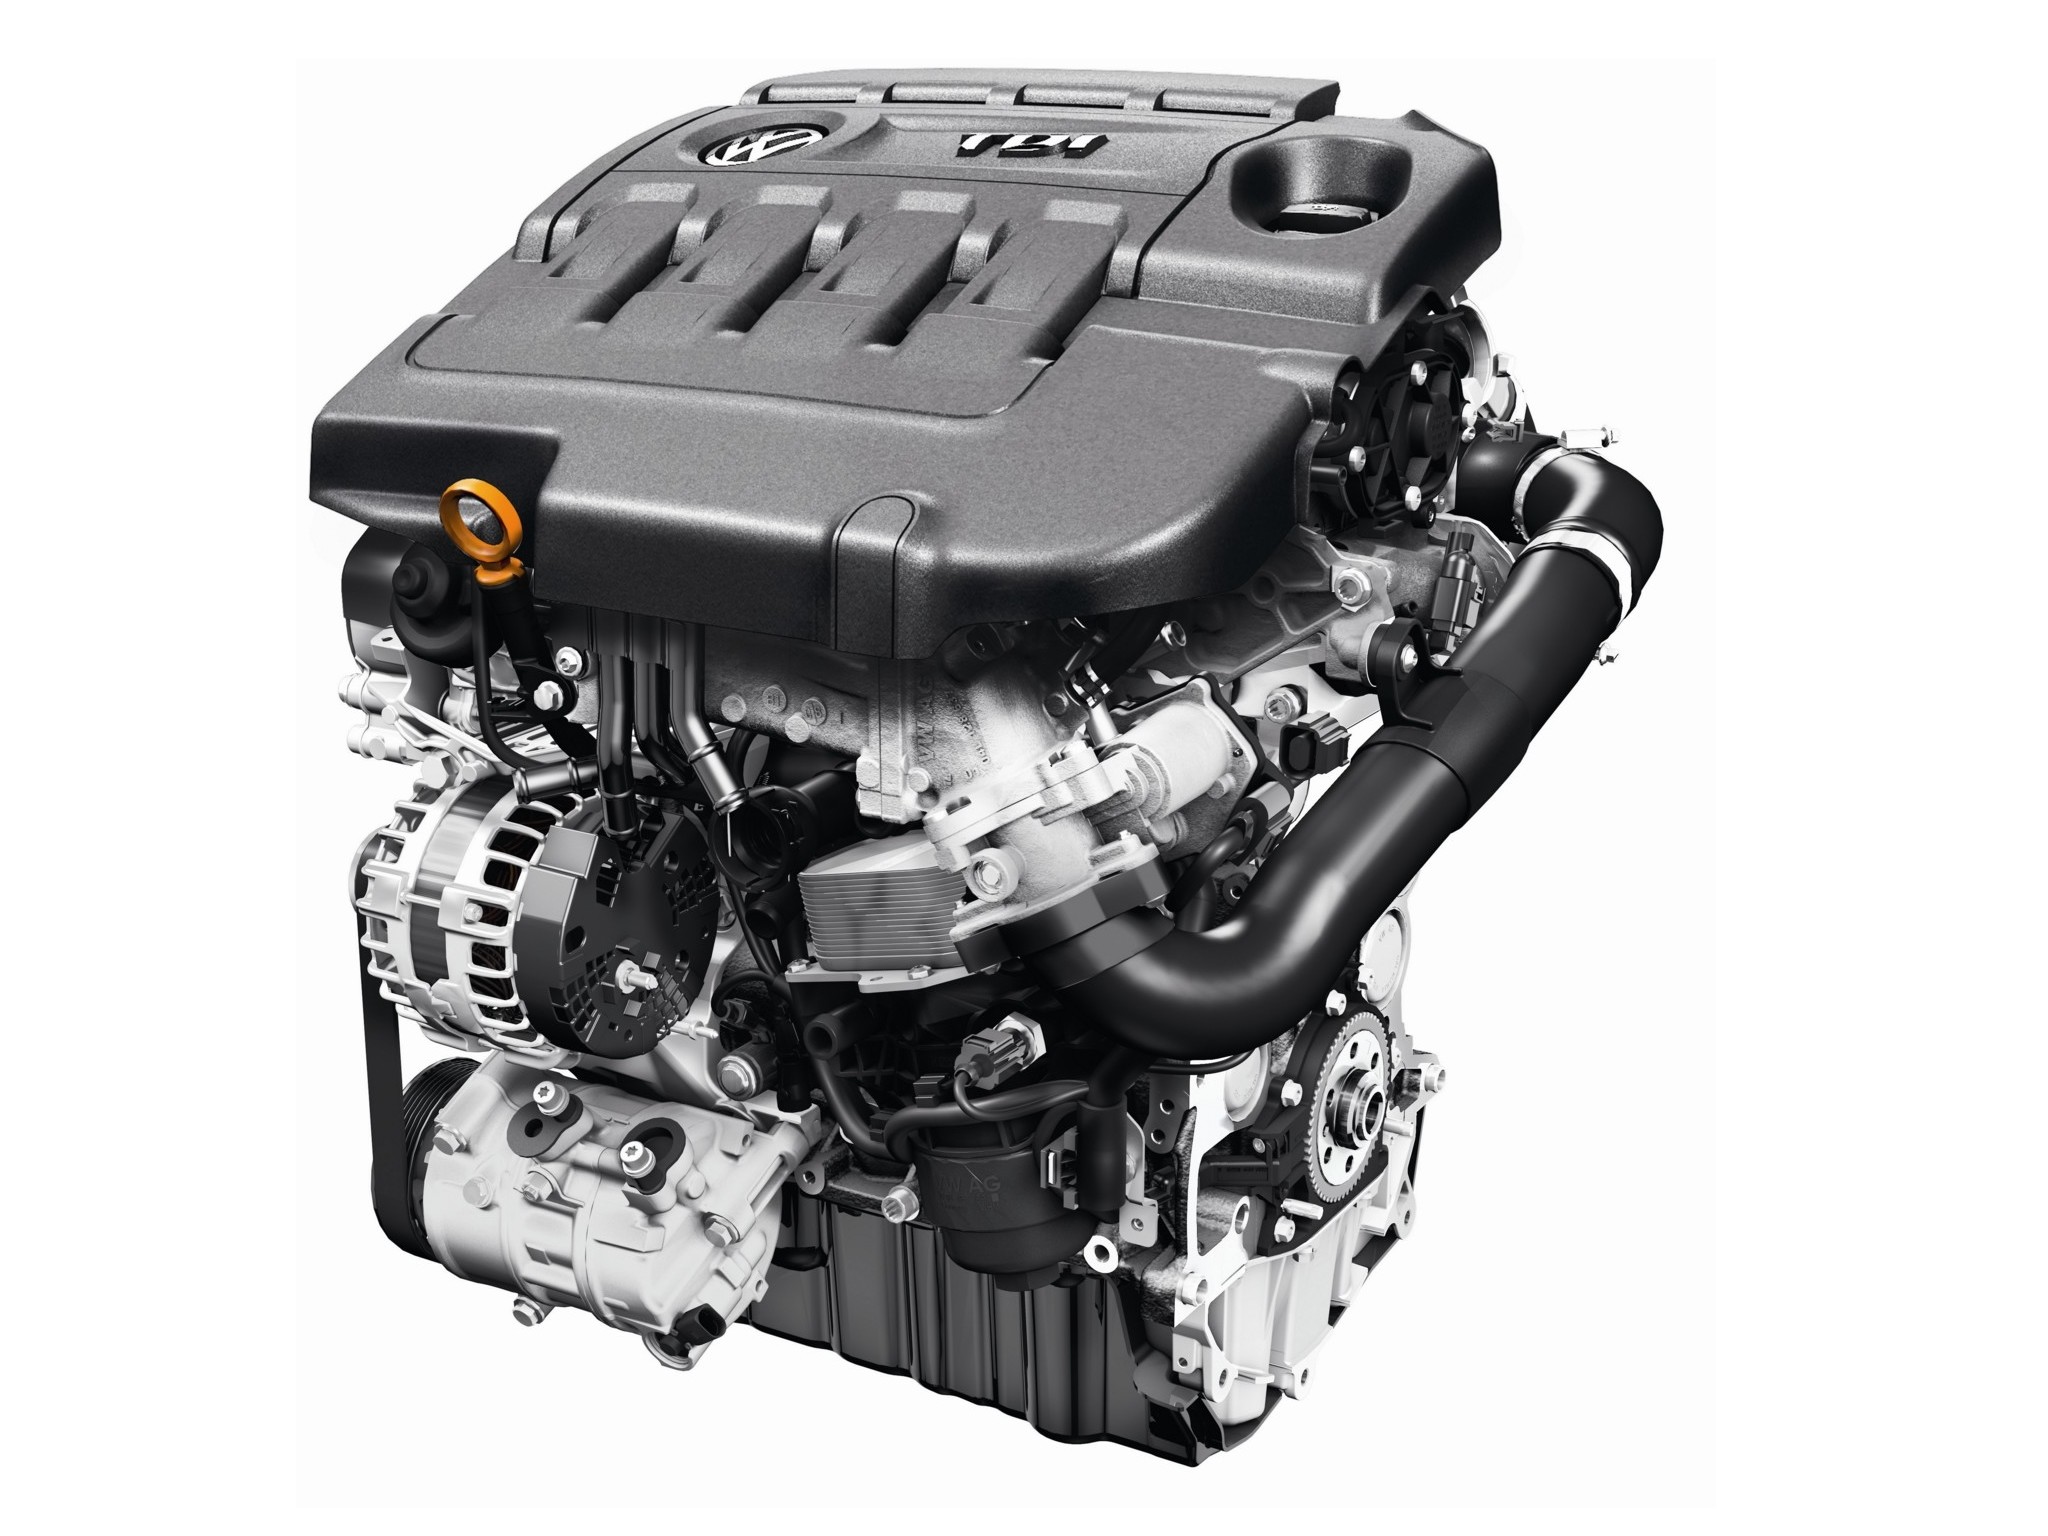 2.5 л 190 л с дизель. Двигатель VW 2.0 TDI. Двигатель ea288 150 л.с 2.0 TDI. Фольксваген,2.0 дизель 140 л.с. 2.0 TDI 140 Л.С дизель.